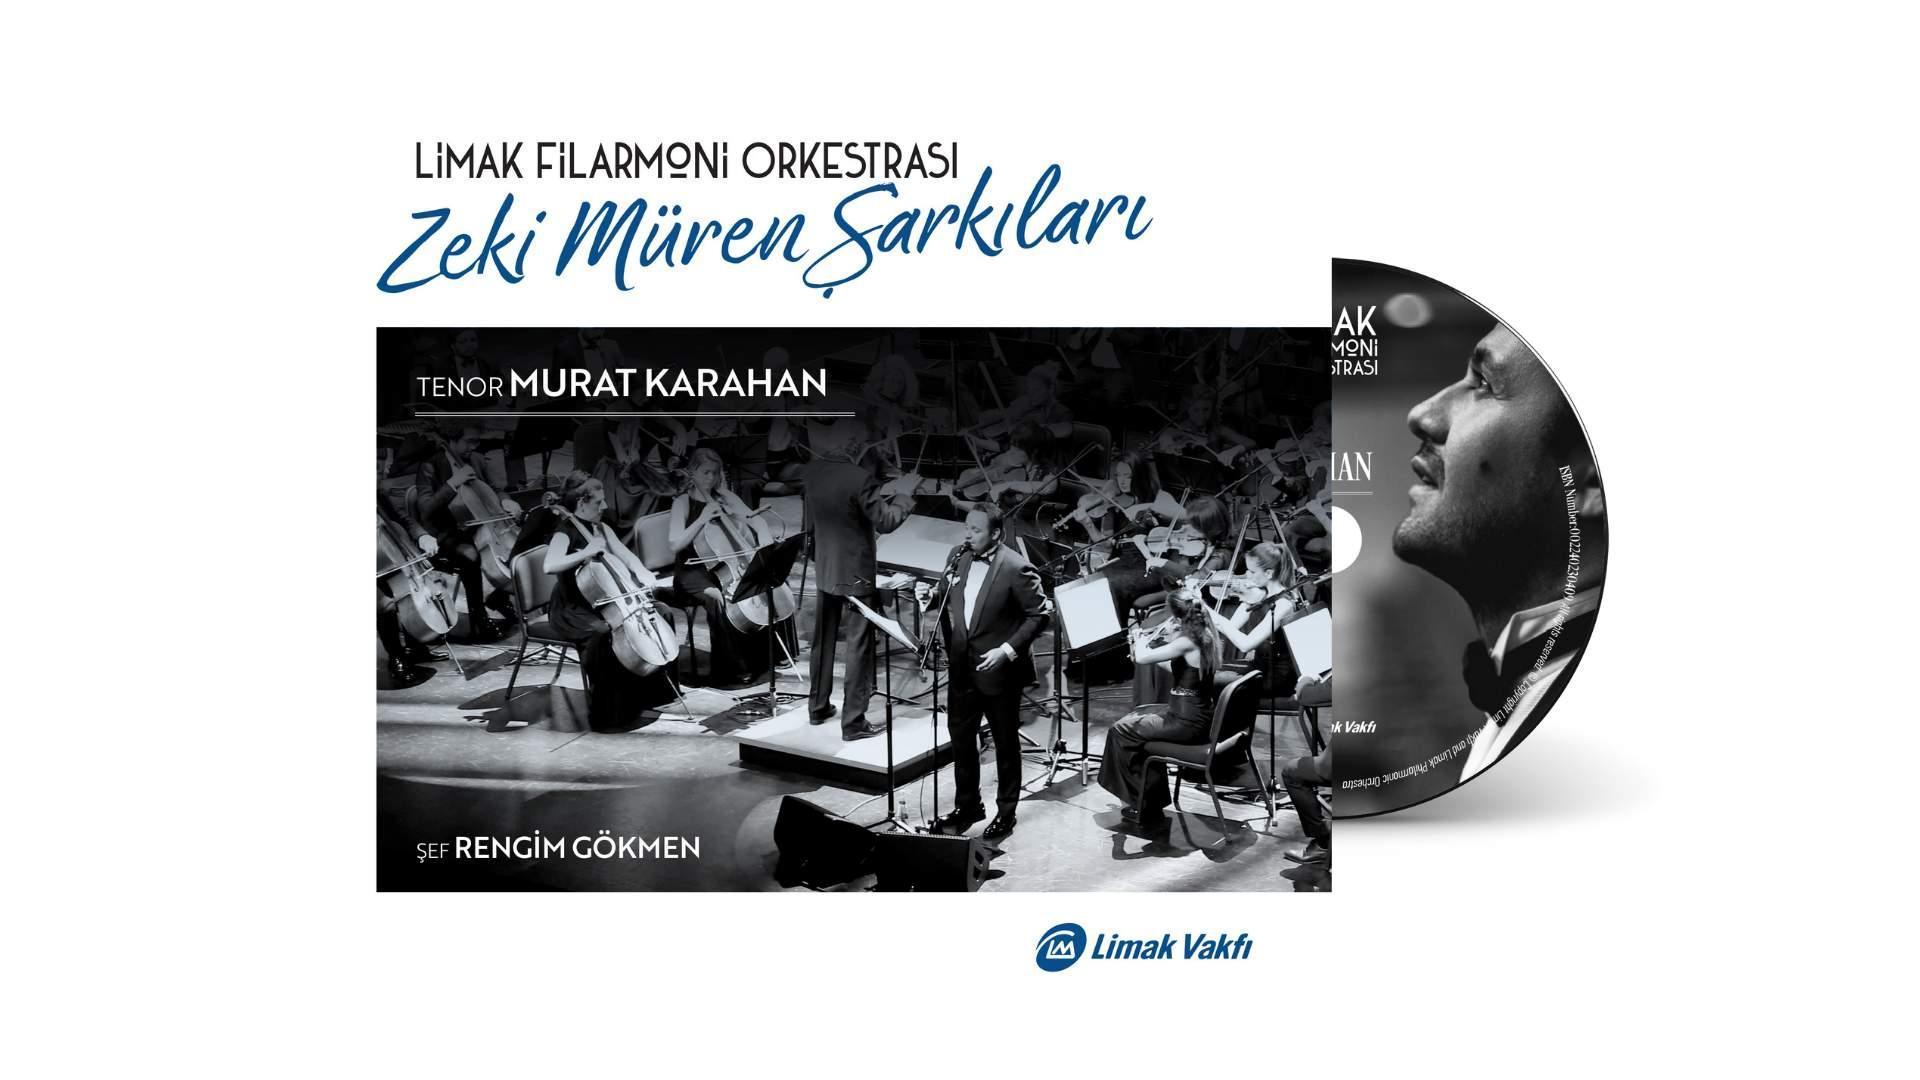 Limak Filarmoni Orkestrasından Zeki Müren Şarkıları” albümü